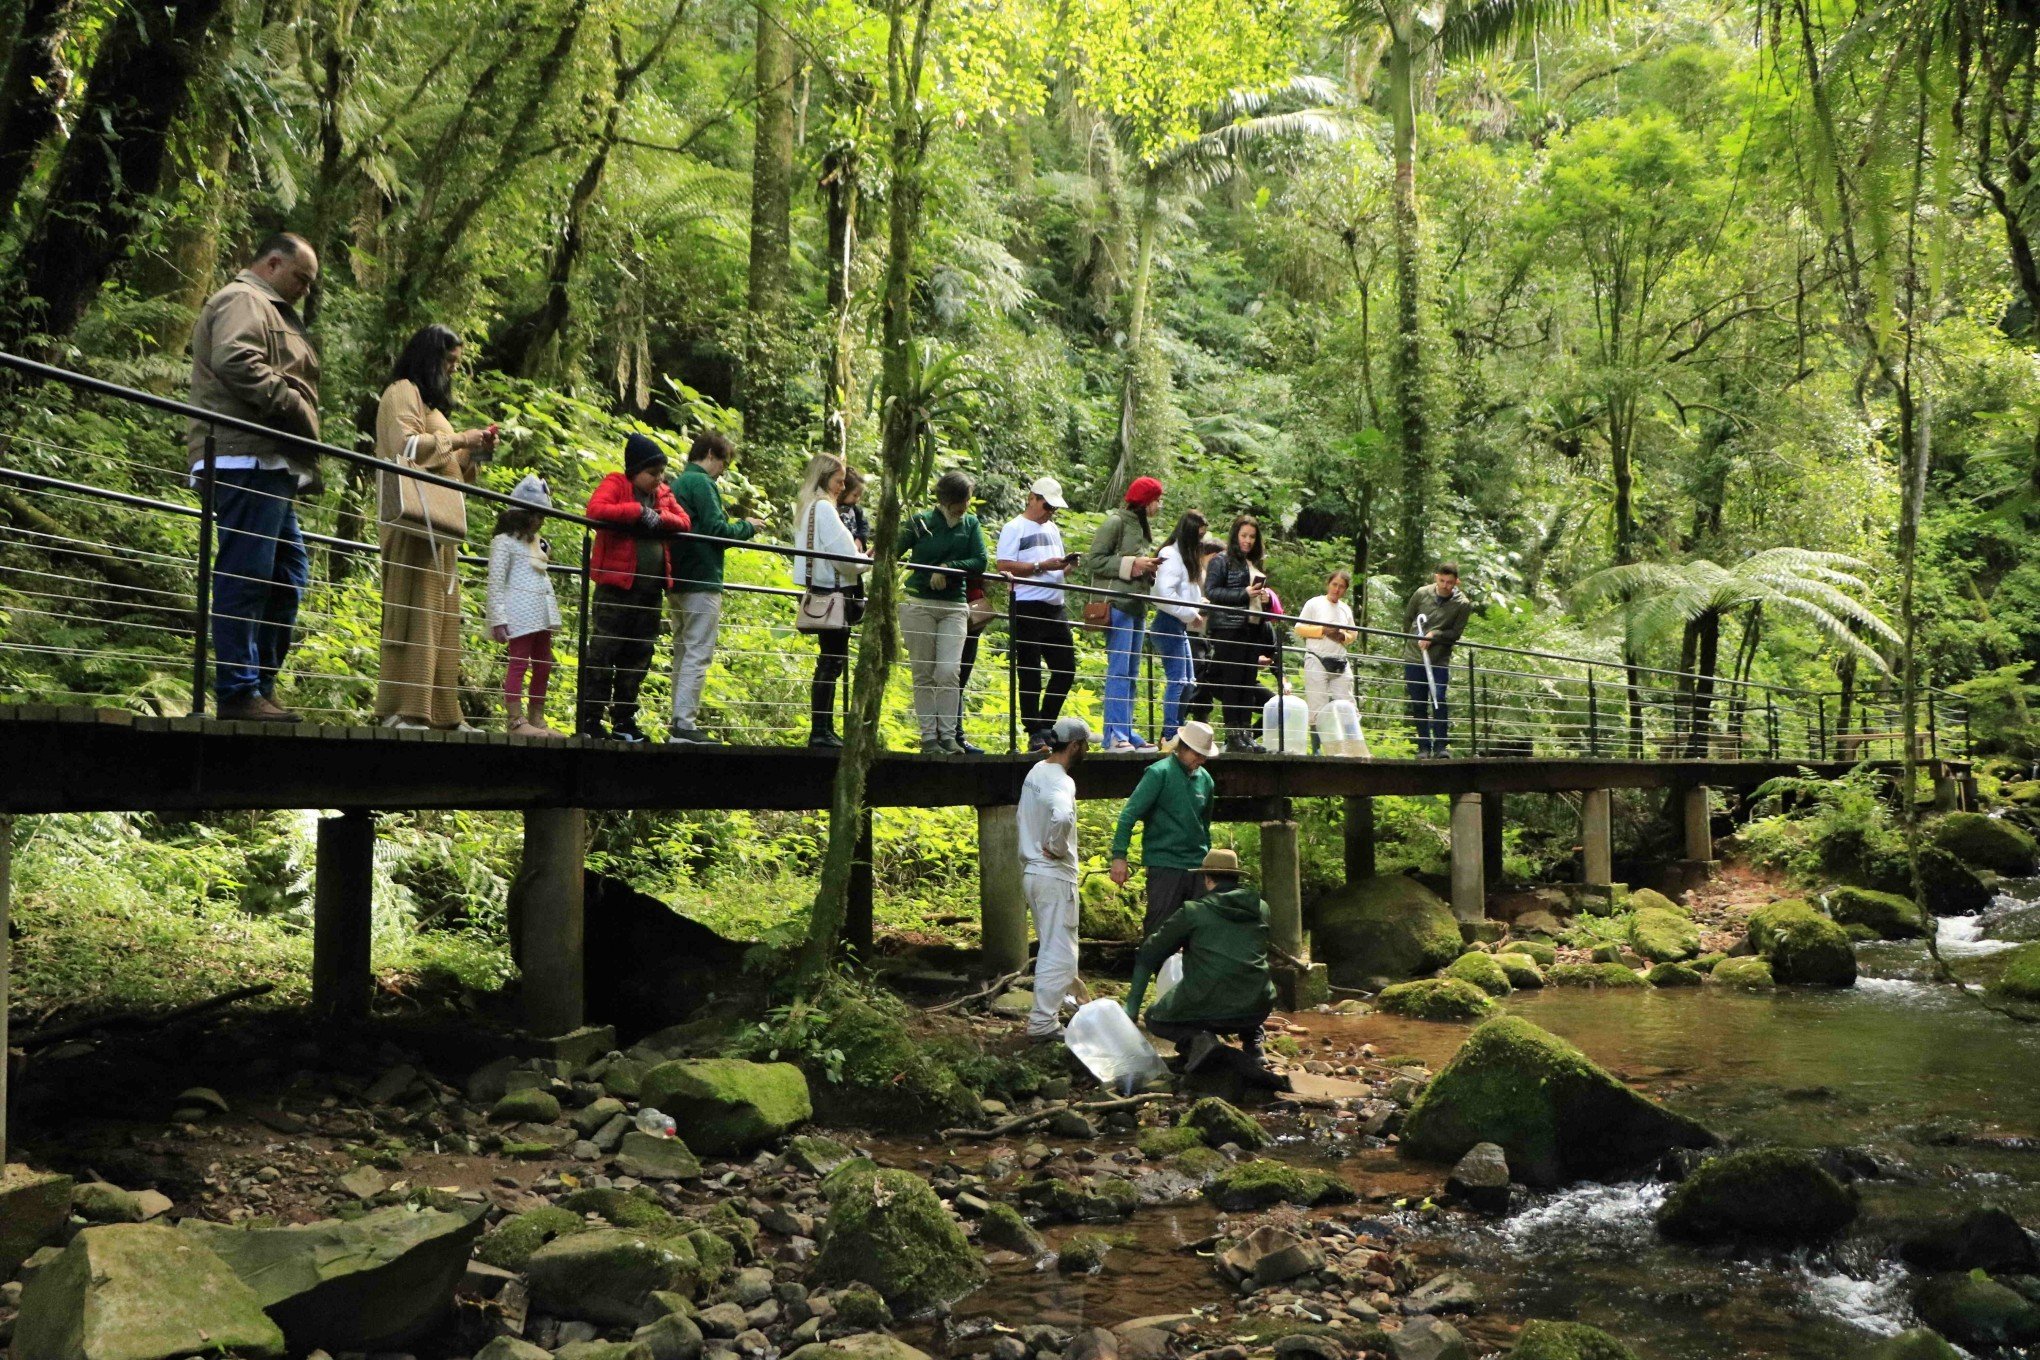 Parque de natureza em Gramado realiza ação de preservação ambiental